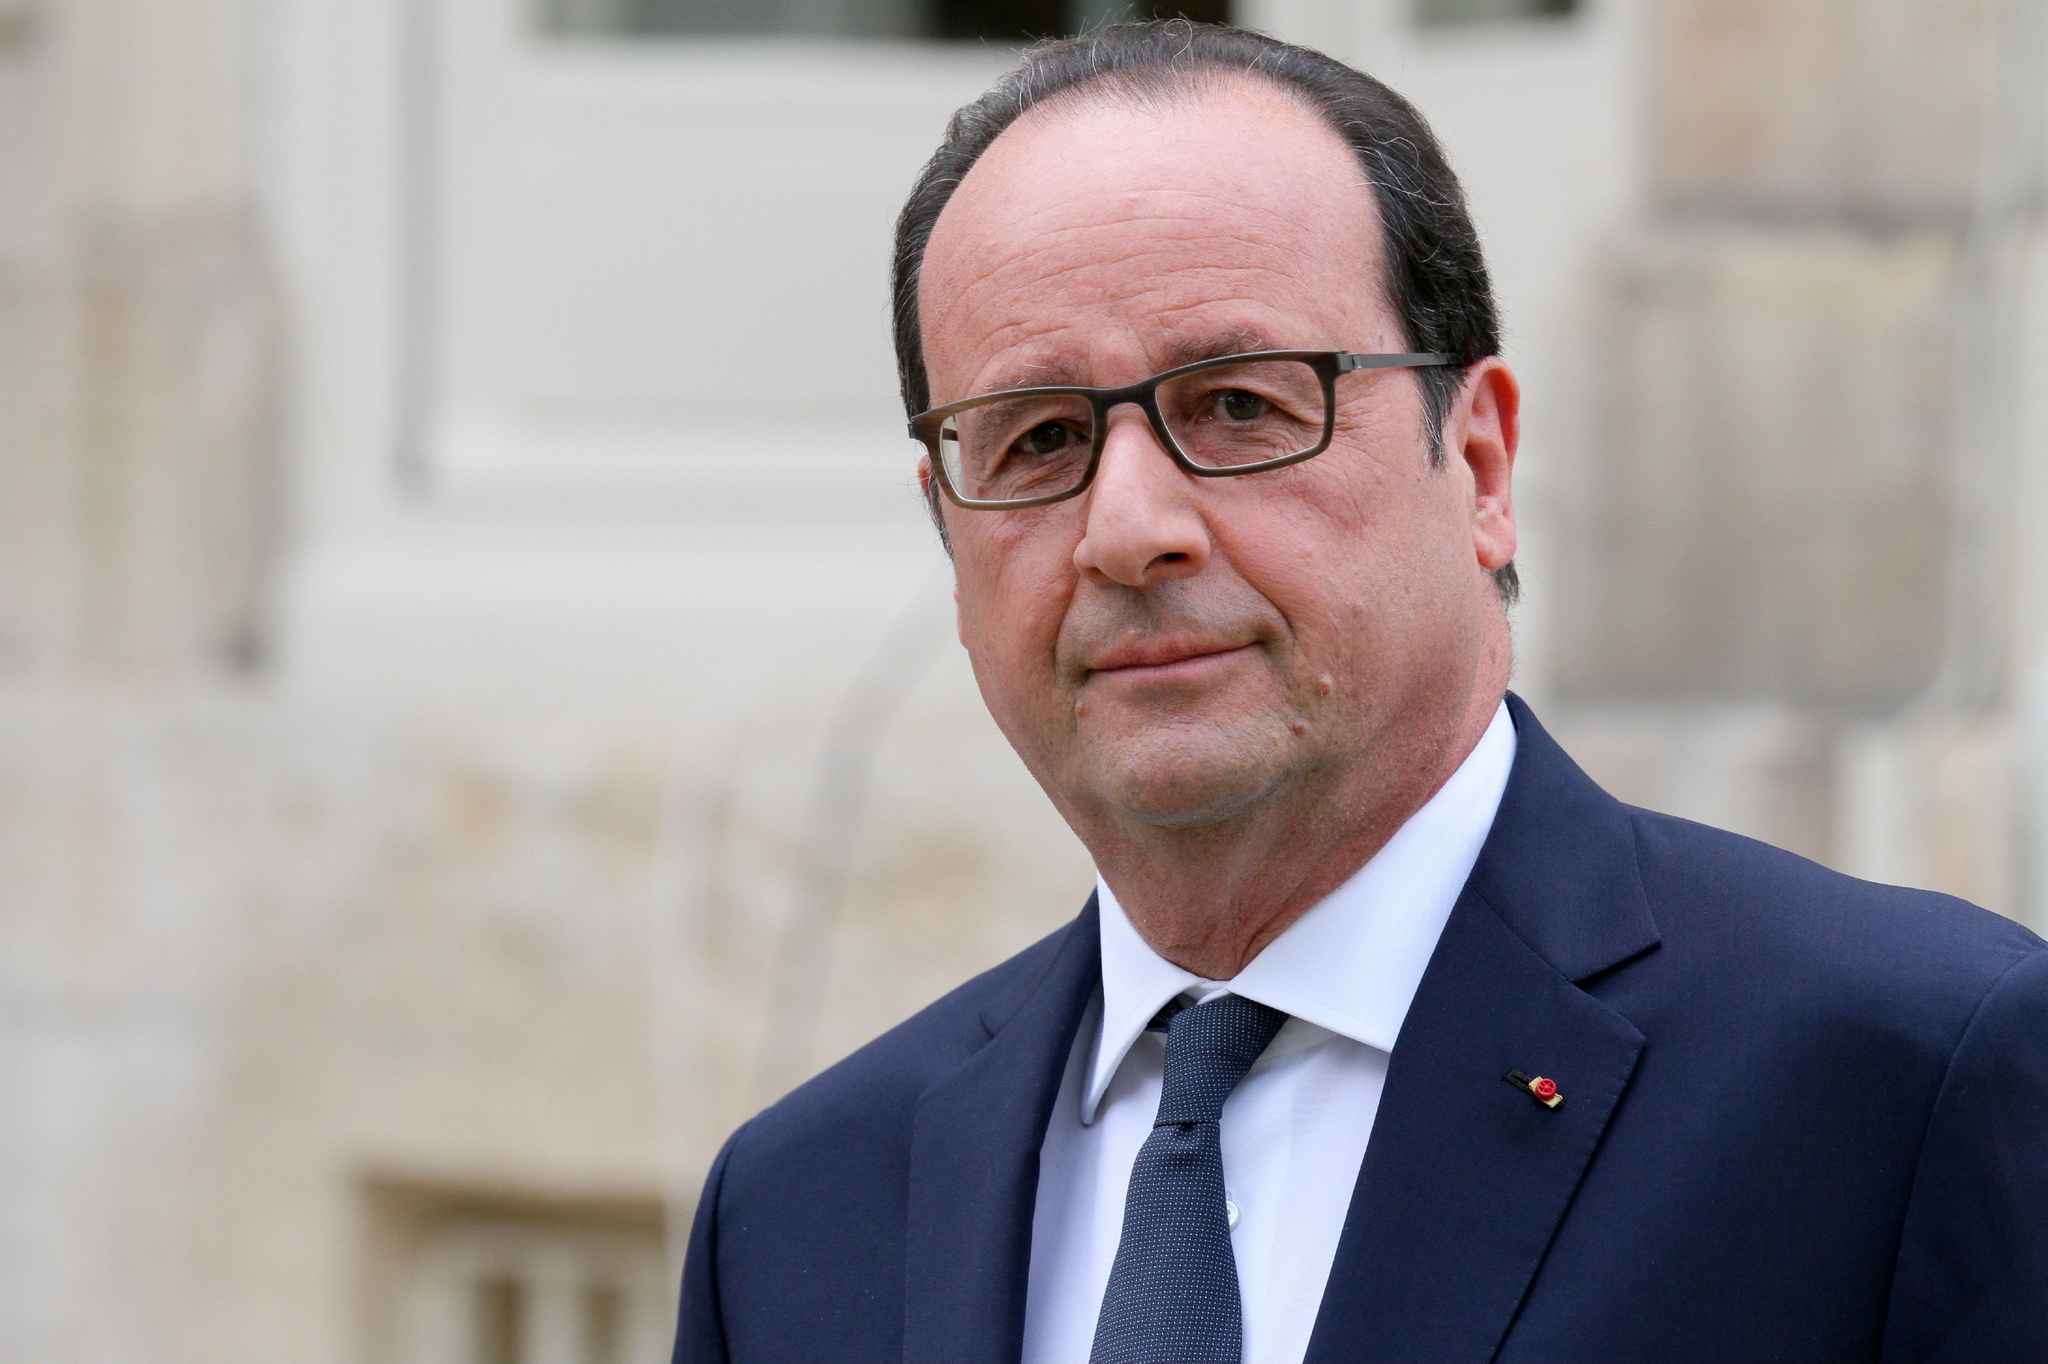 François Hollande : "La laïcité ne s'oppose pas à la pratique de l'islam en France"